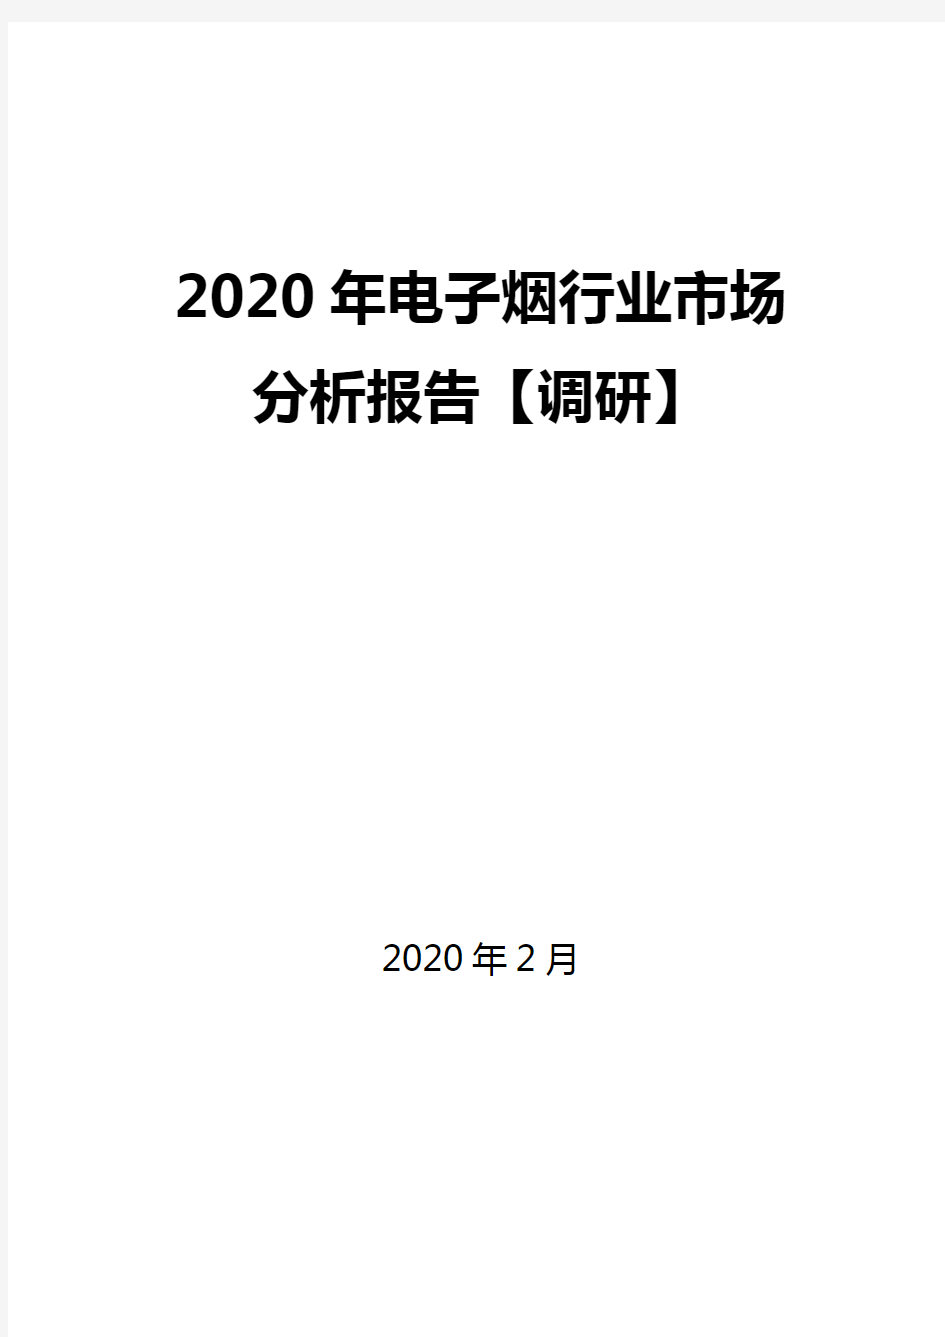 2020年电子烟行业市场分析报告【调研】